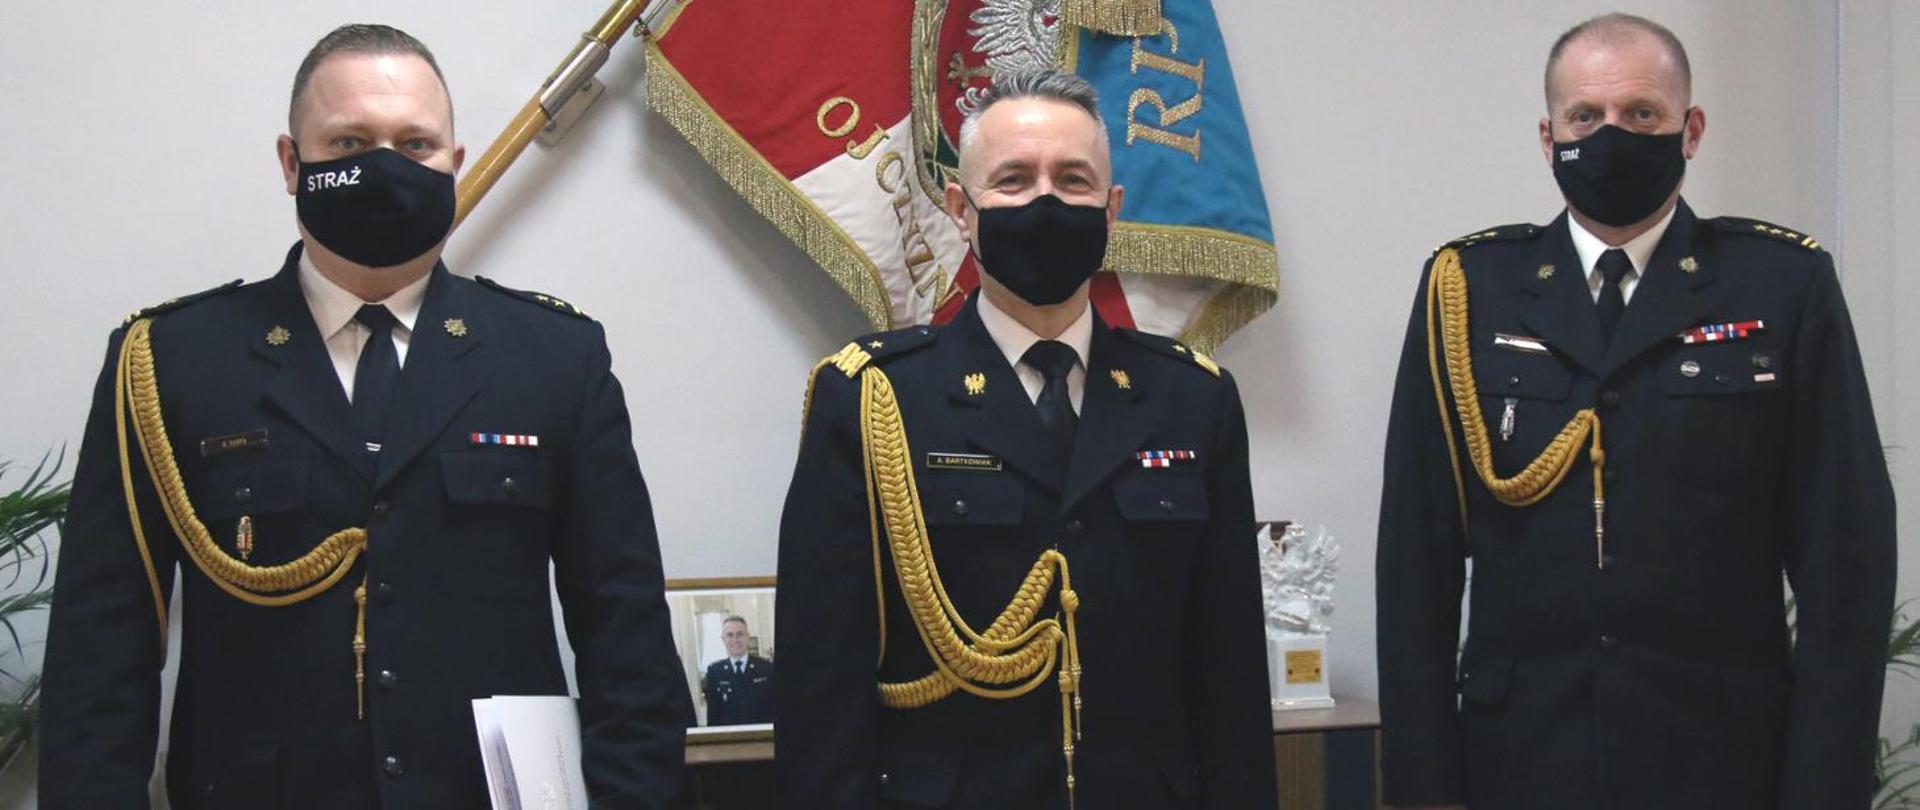 Komendant Główny wraz z Zachodniopomorskimi Komendantami Wojewódzkimi na tle sztandaru